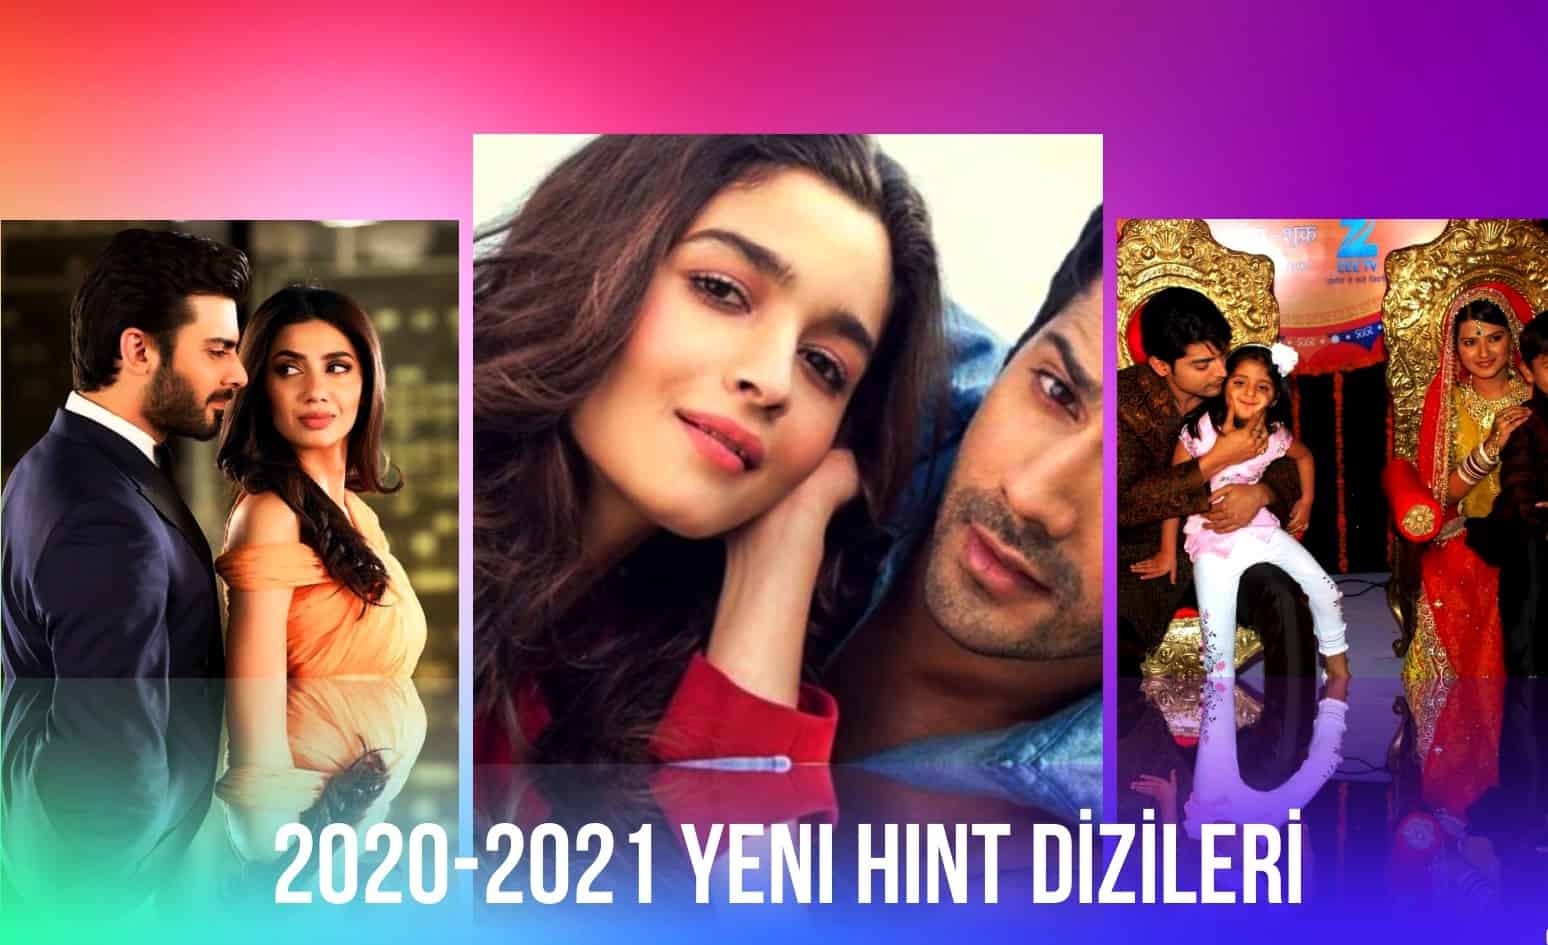 KANAL 7 de yayınlanacak Yeni Hint DİZİLERİ 2020-2021